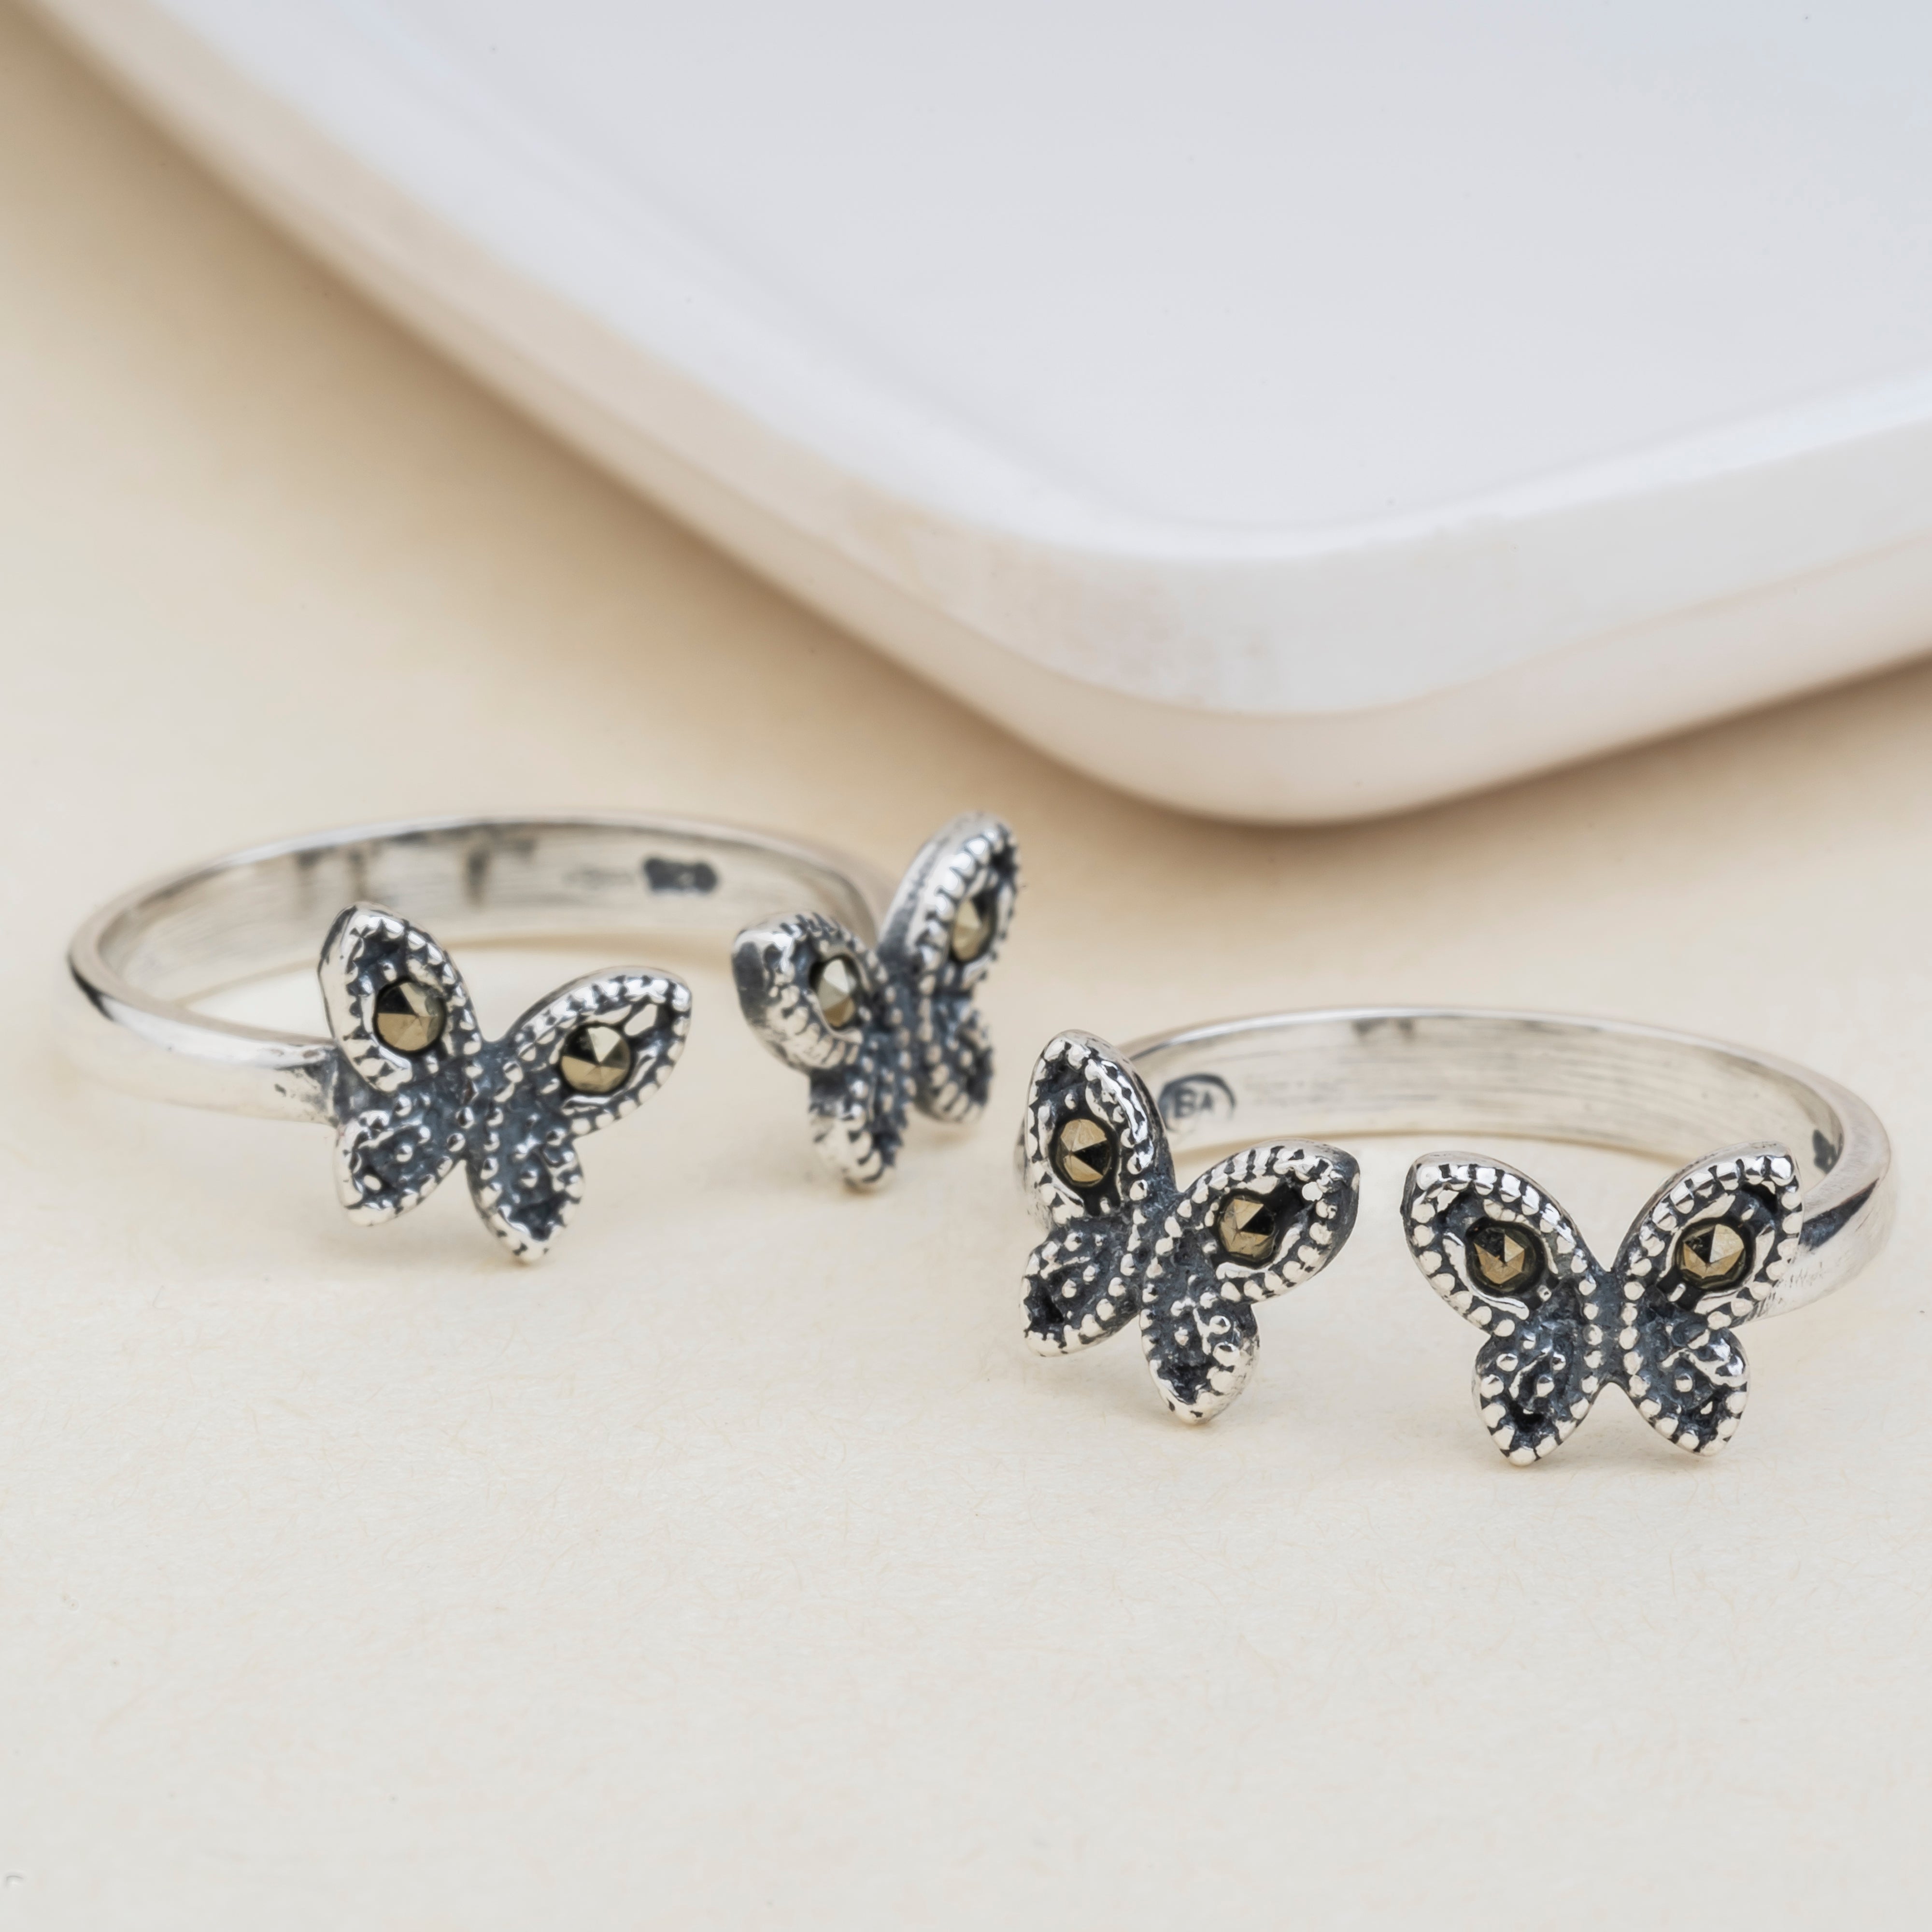 Butterfly Design Earrings Silver Butterfly Earrings Dangle - Etsy | Silver  butterfly earrings, Earrings, White howlite jewelry